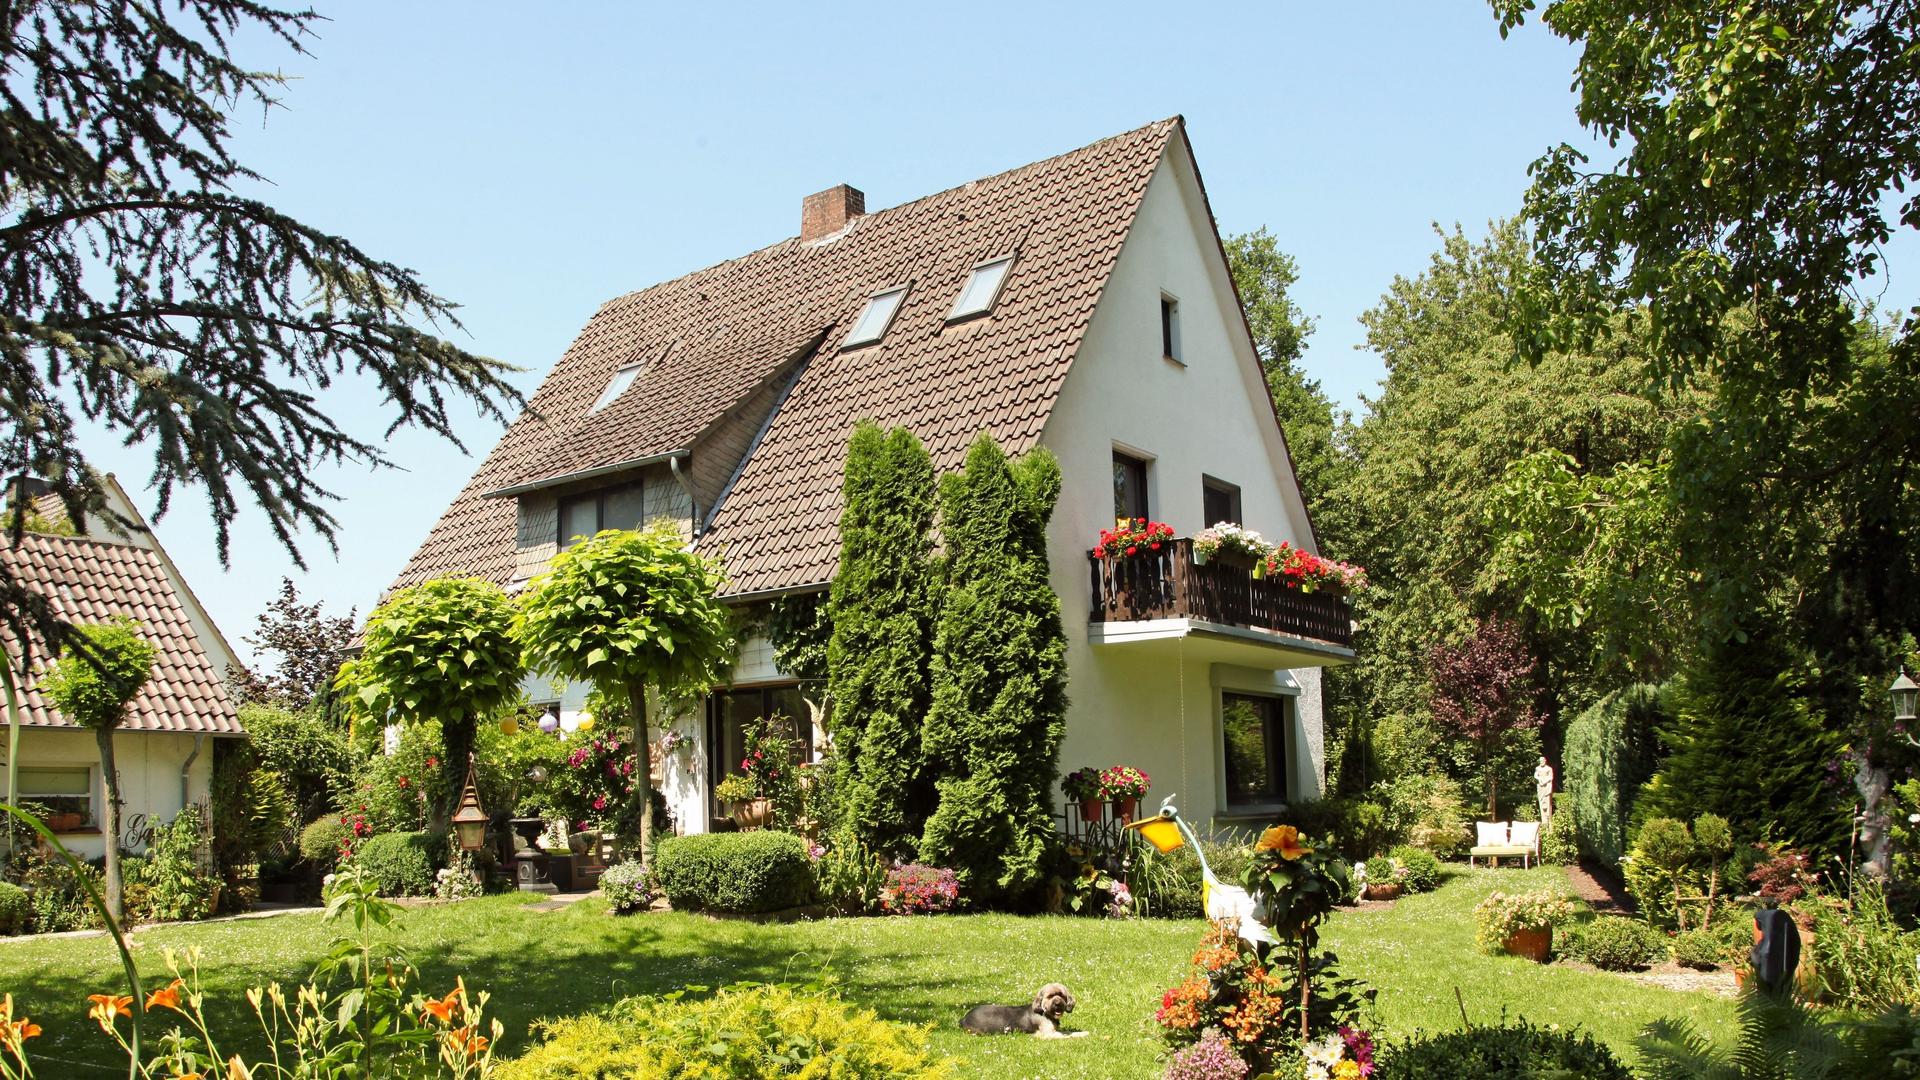 Einfamilienhaus mit großem grünen Garten.